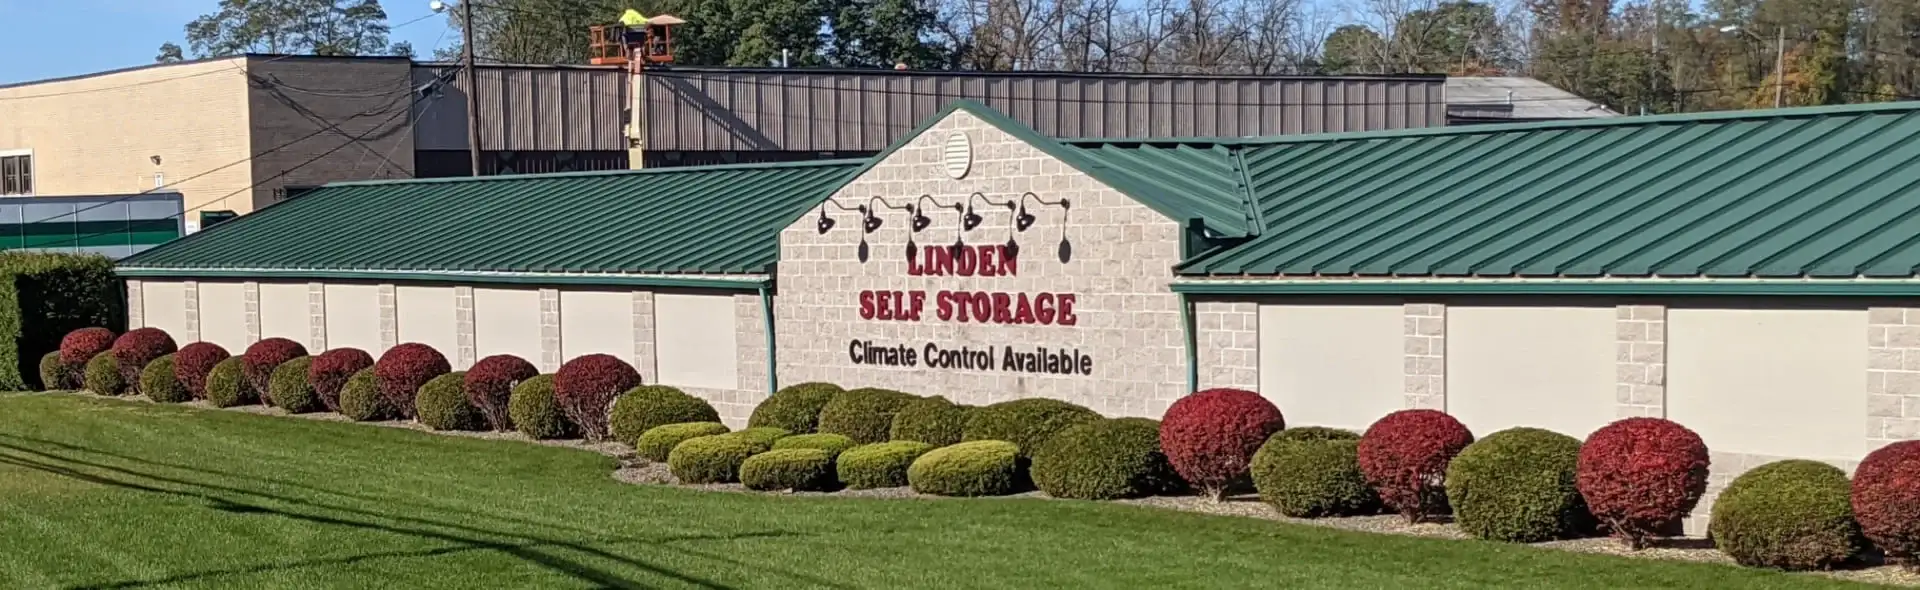 Linden Self Storage